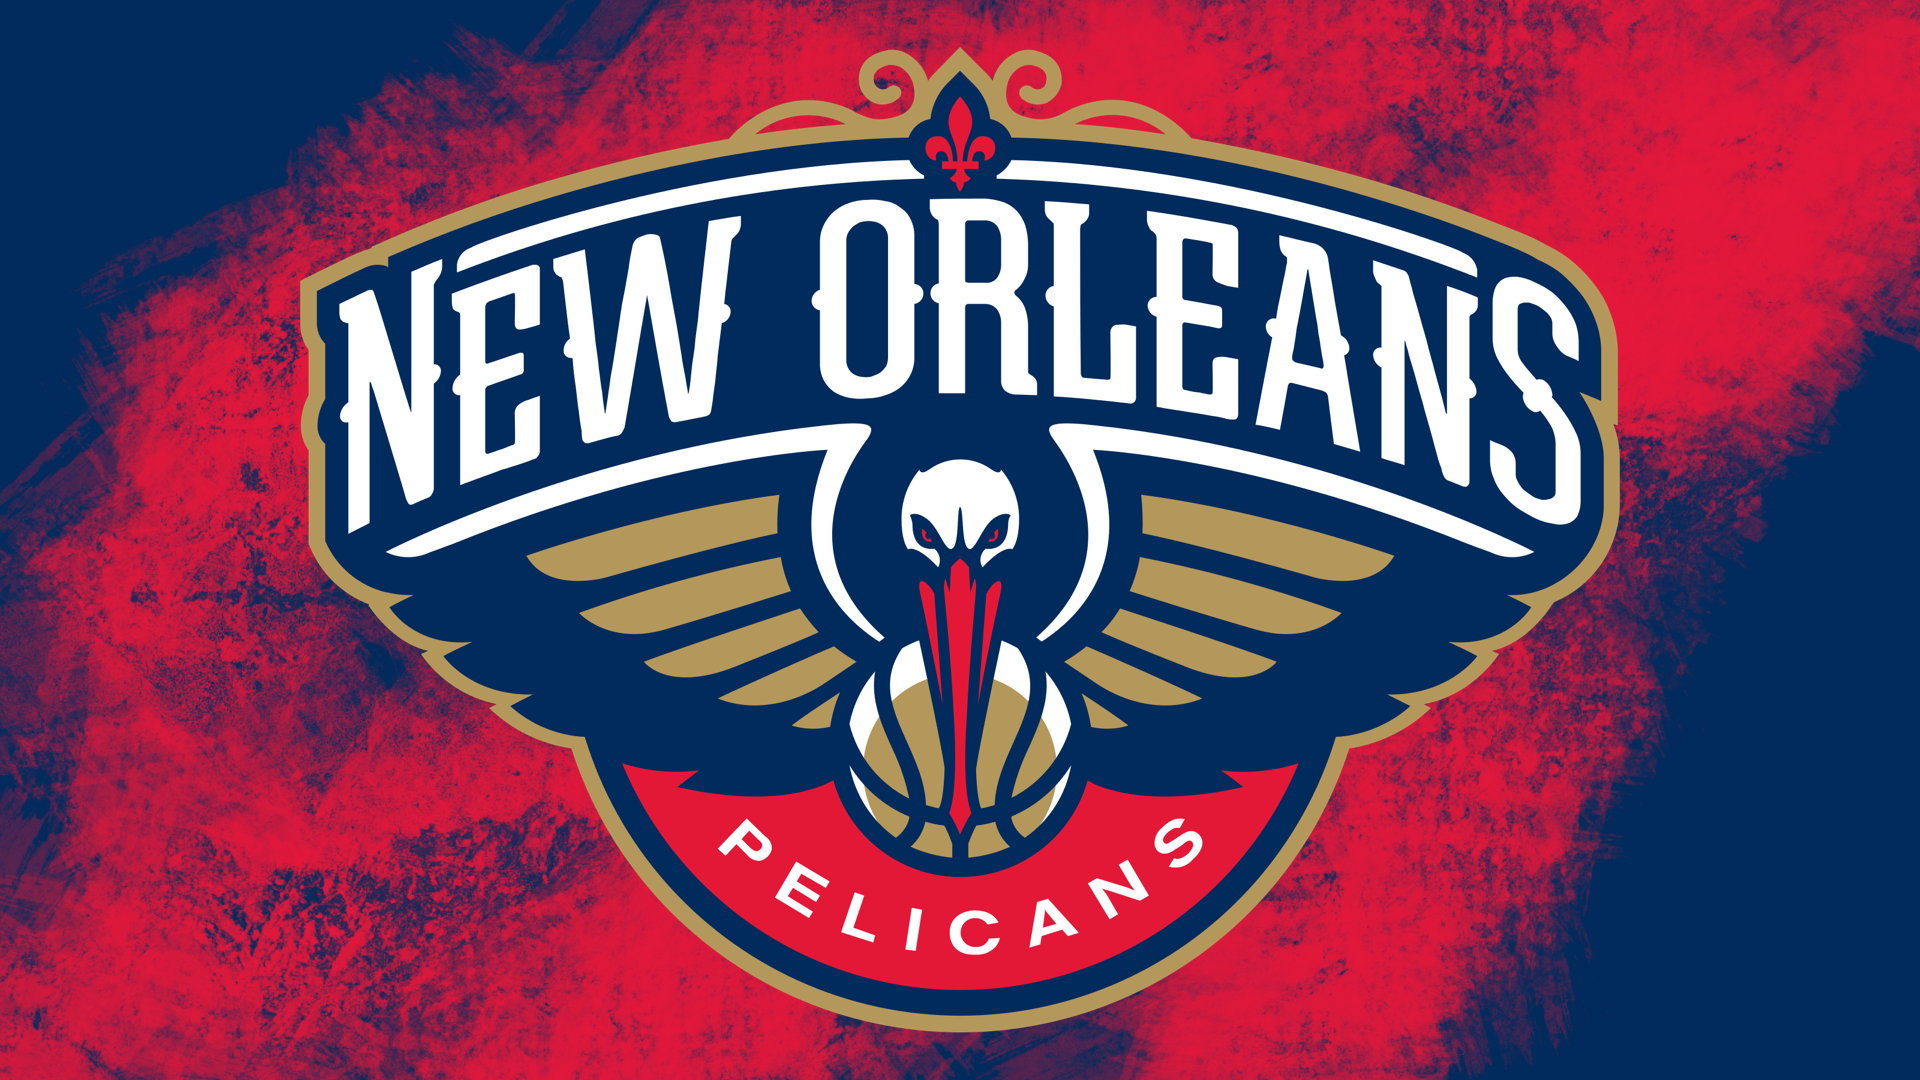 New Orleans Pelicans on Twitter iiiiiiiiiits WALLPAPER WEDNESDAY   httpstcoQbgerMQrNW  X